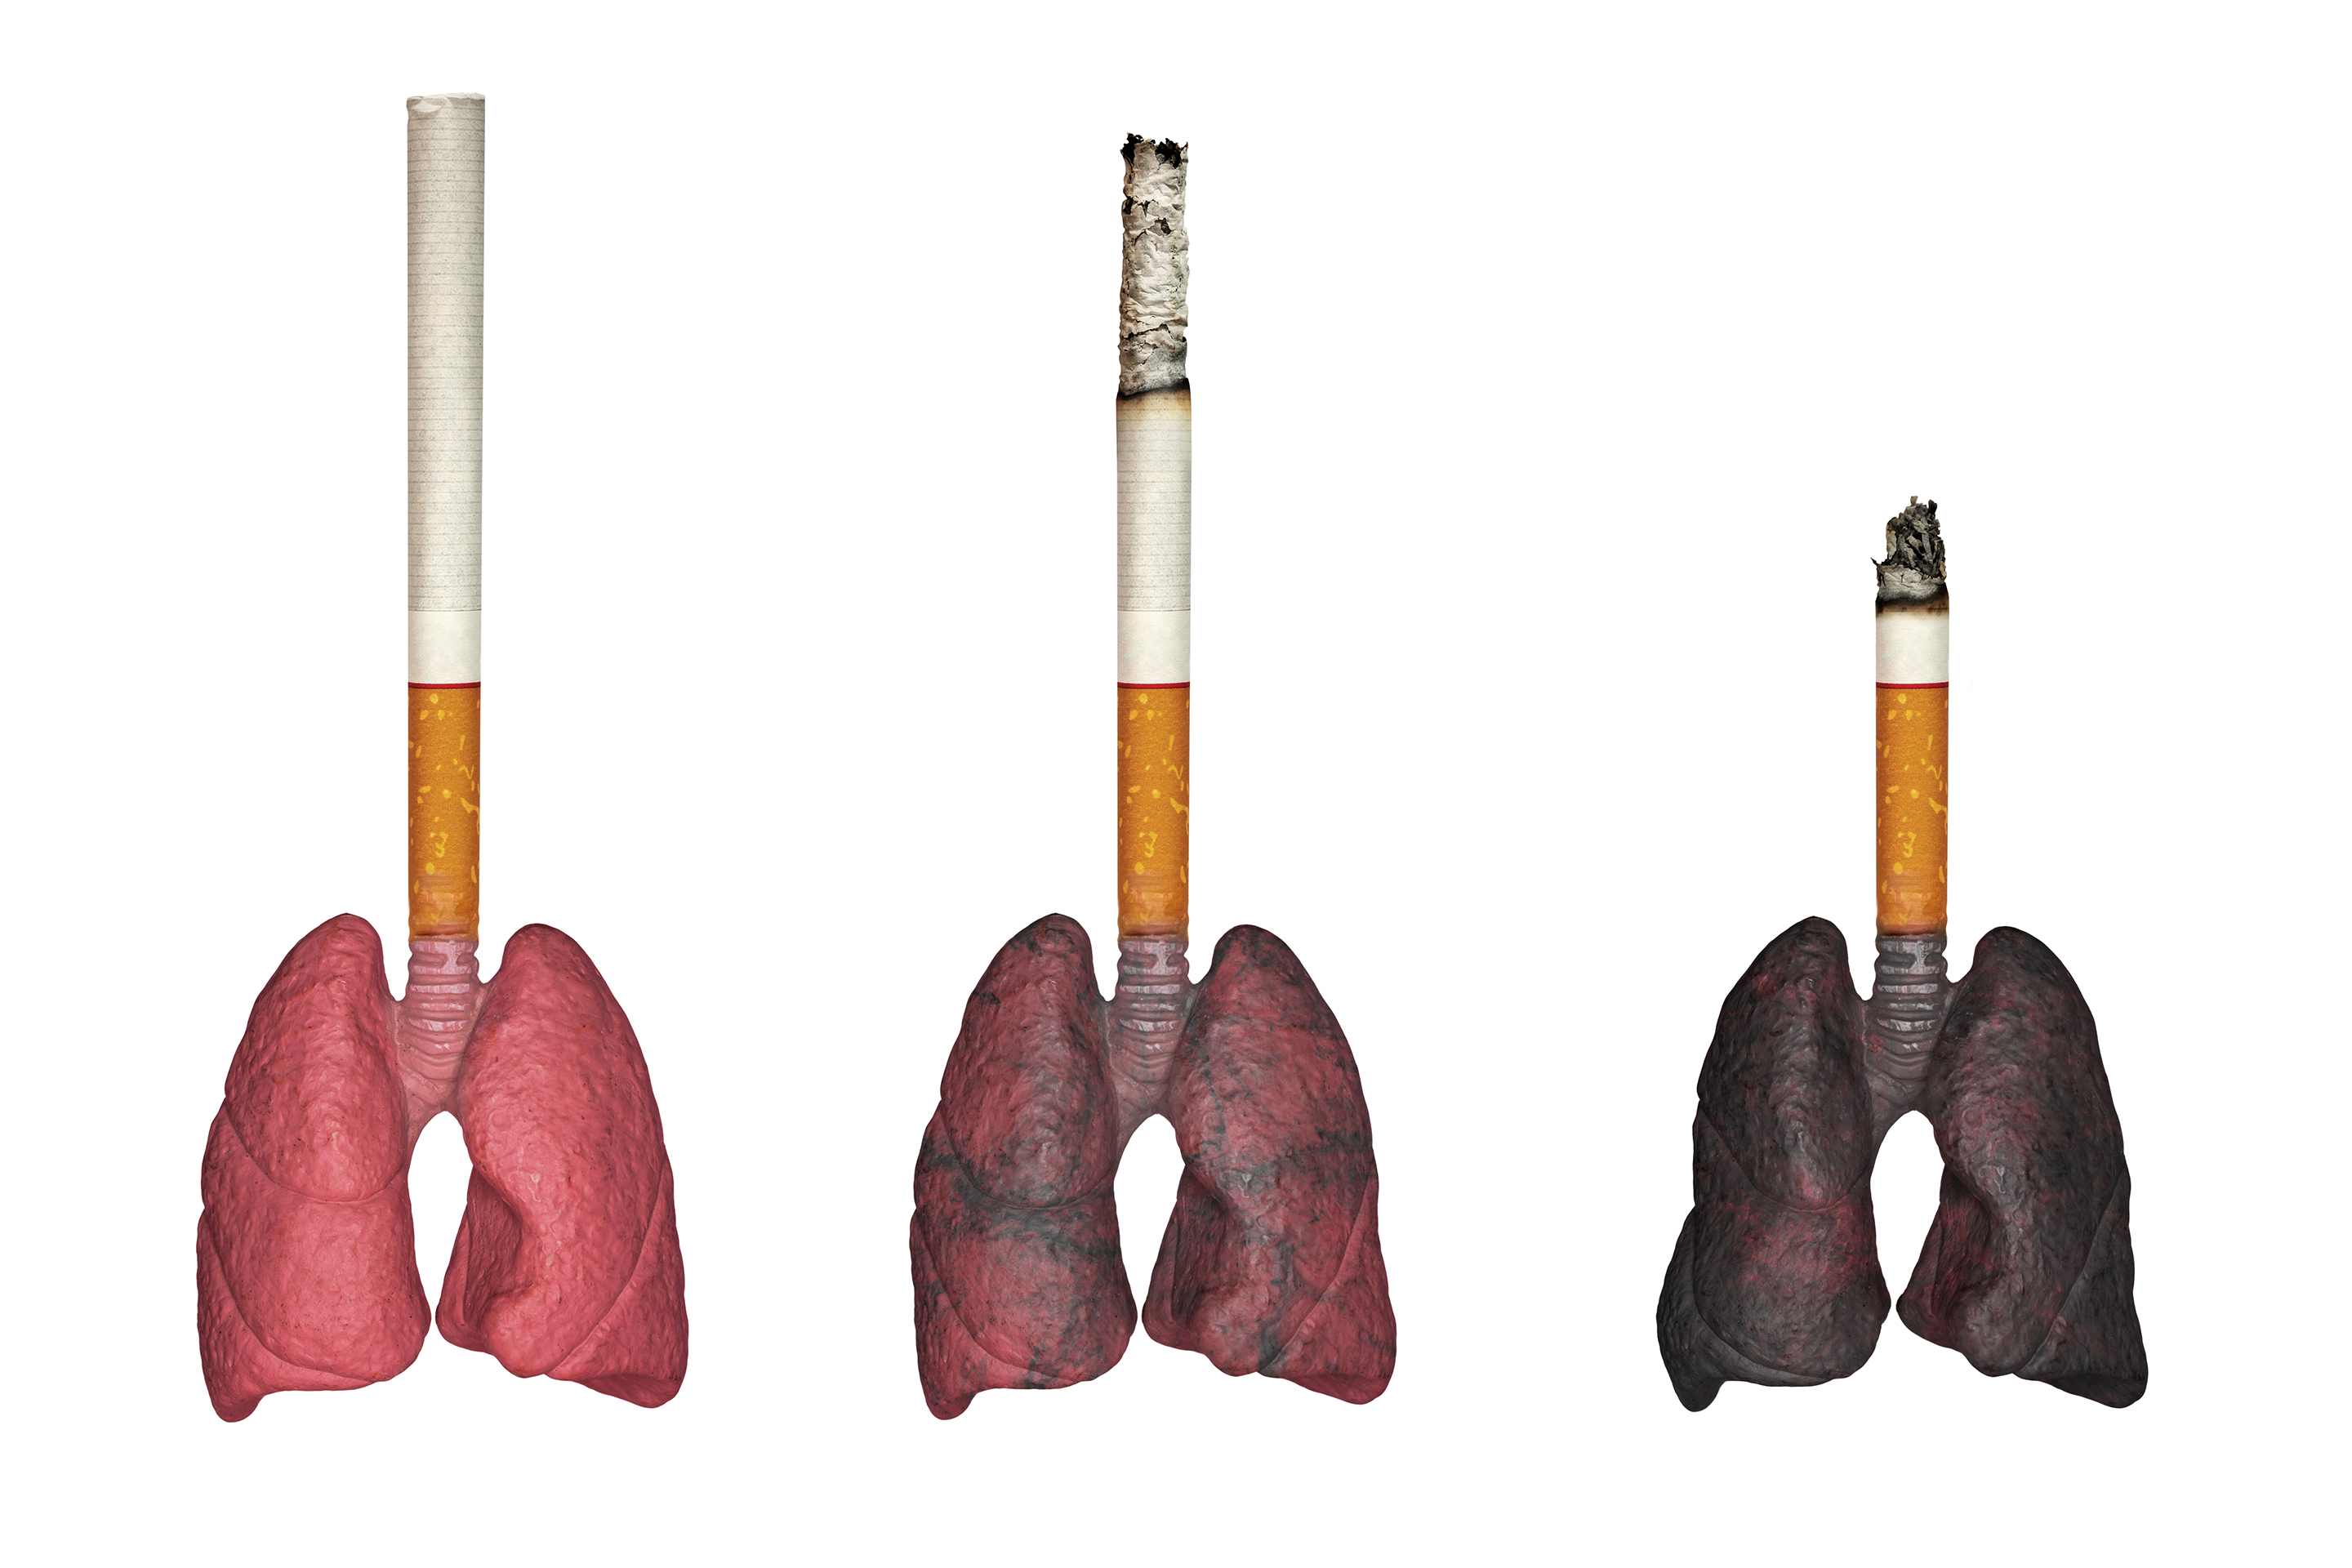 smoker-s-lungs-image-1-2.jpg